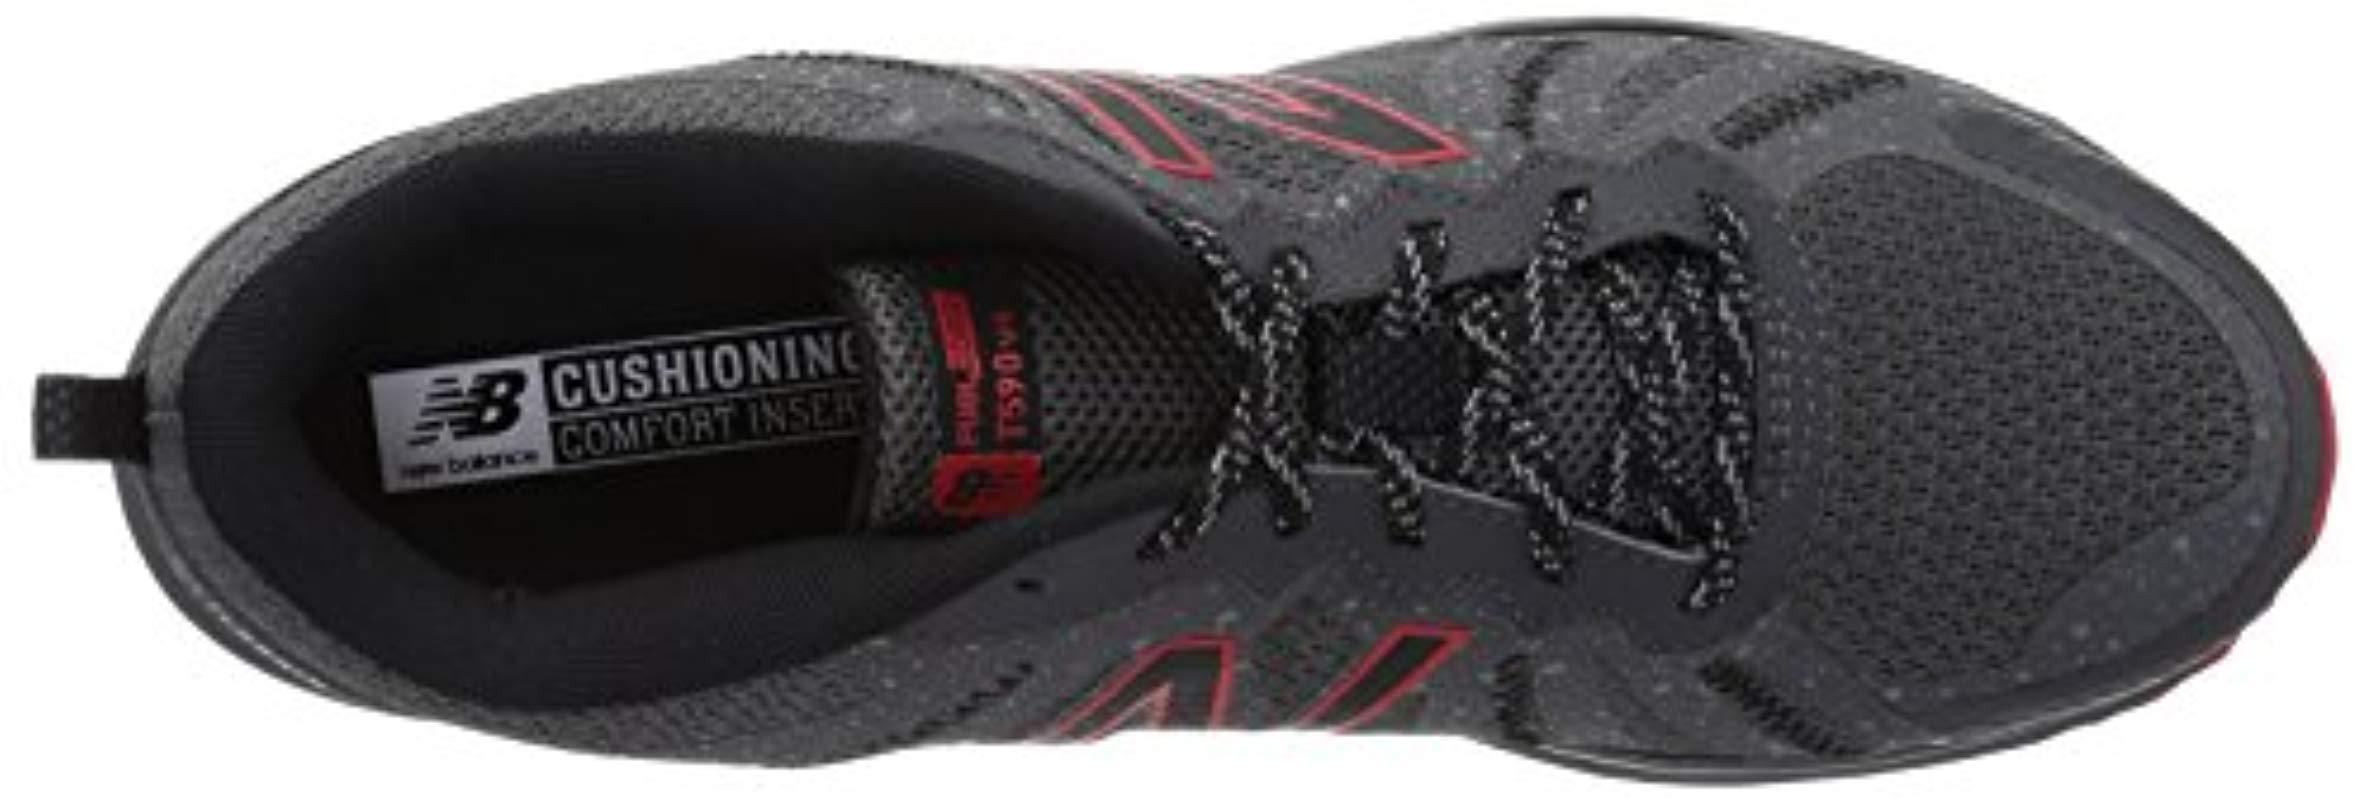 New 590 V4 Running Shoe in Black for | Lyst